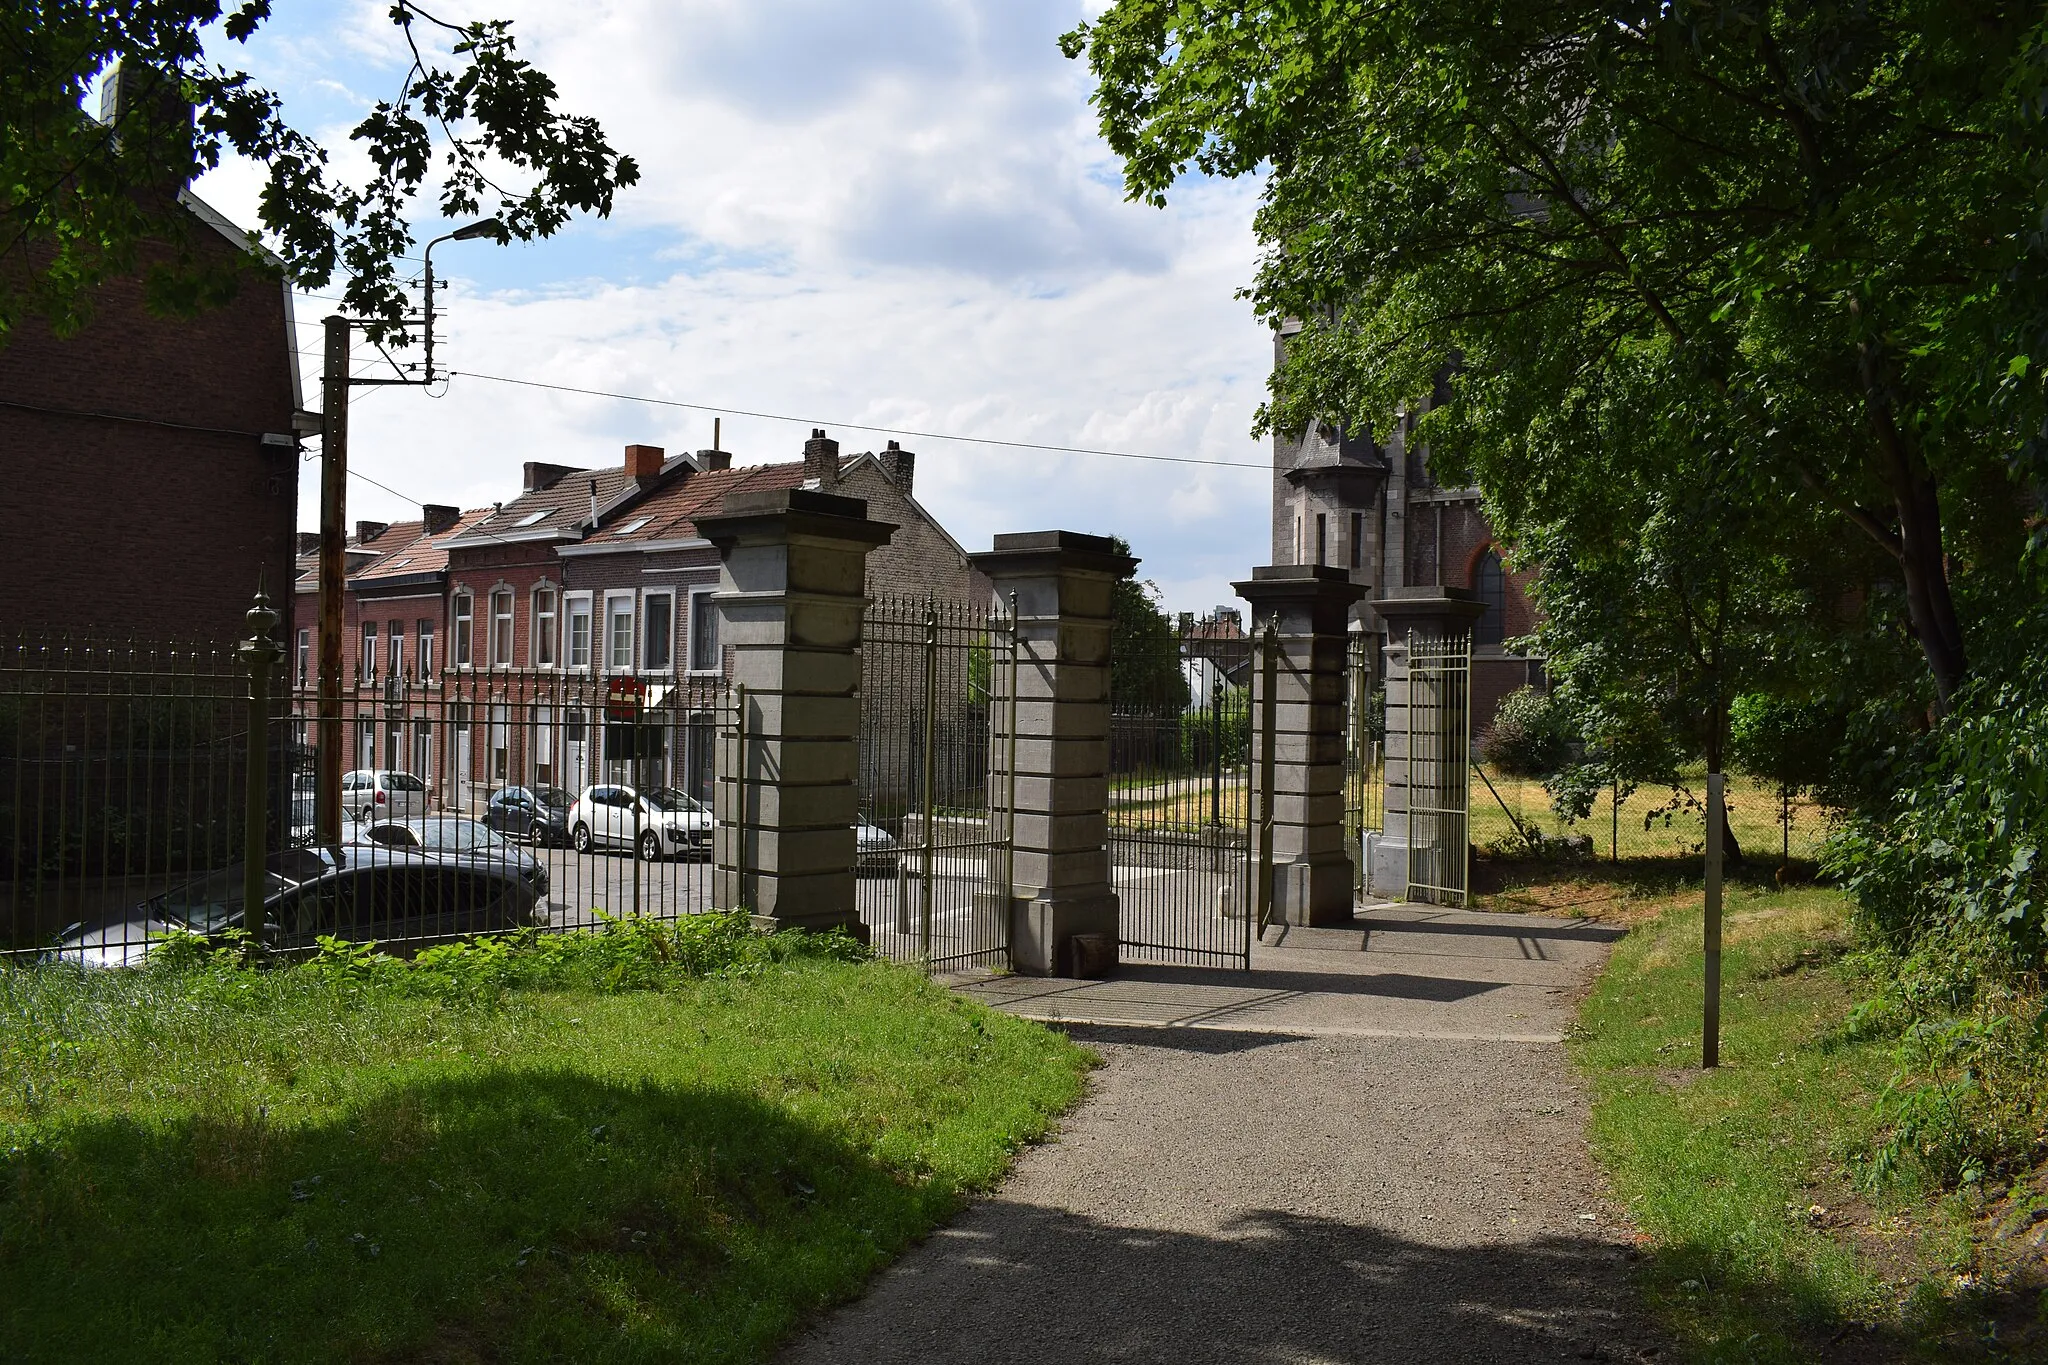 Photo showing: Vue des alentours de l'église Saint-Lambert (ancienne église du couvent des Missionnaires Oblats de Marie Immaculée) et du parc des Oblats à Grivegnée (quartier de la ville de Liège, en Belgique).